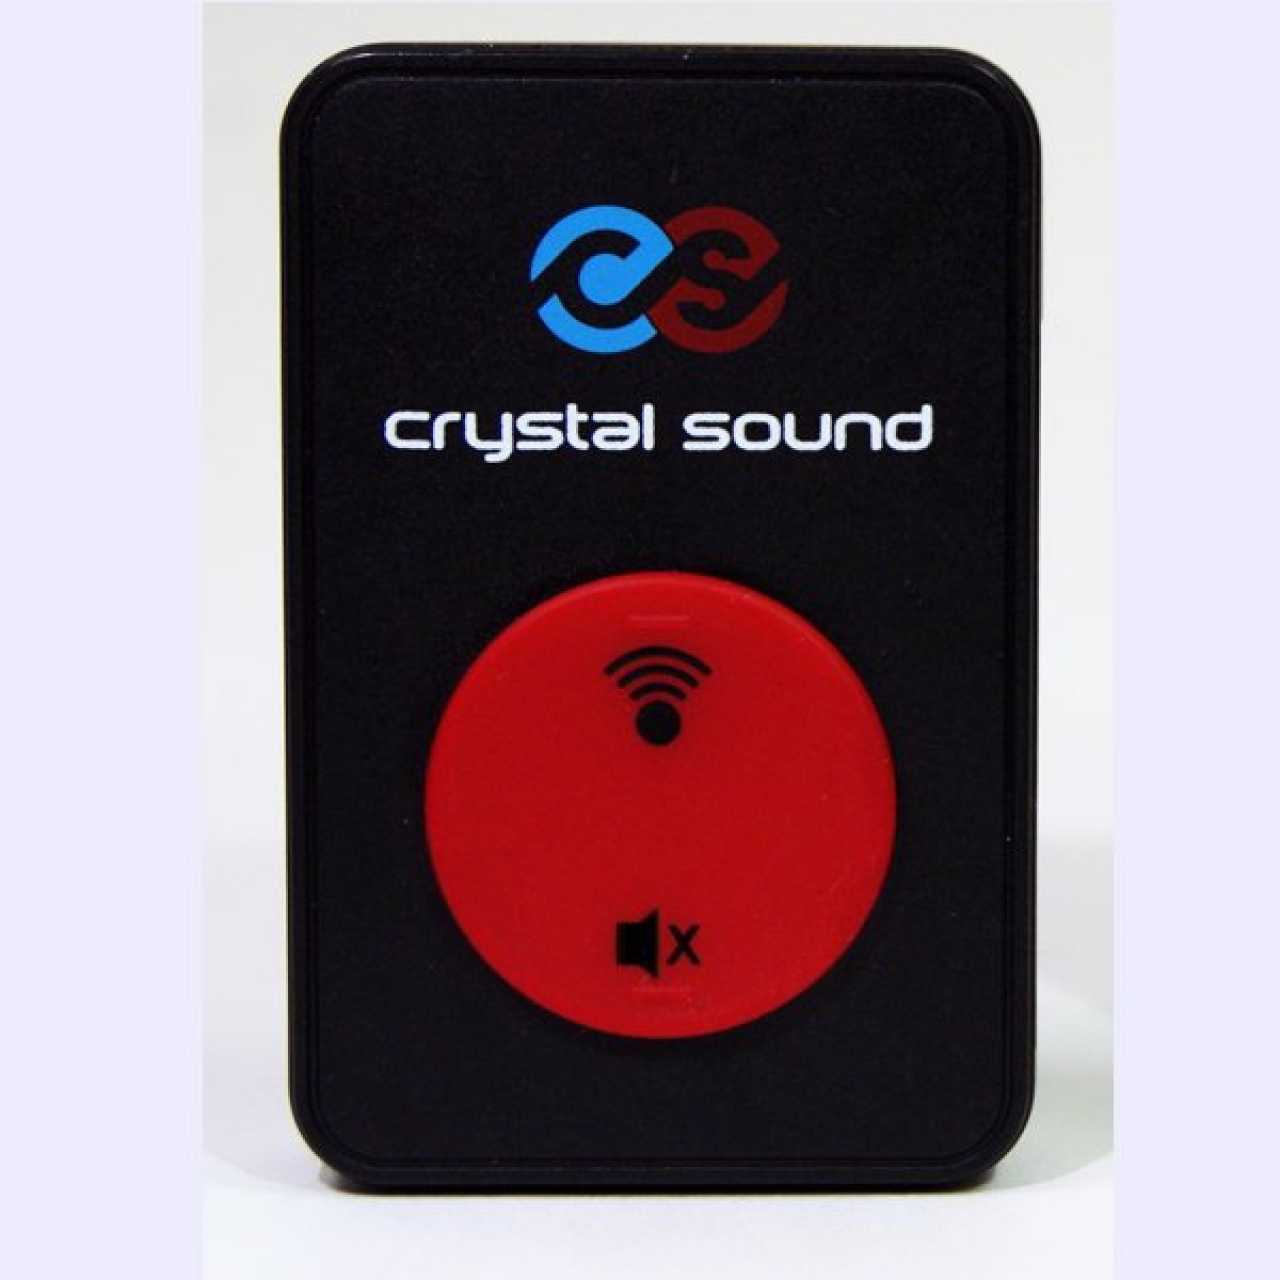 Crystal Sound Tur Rehber Sistemi "Alıcı Ünitesi"